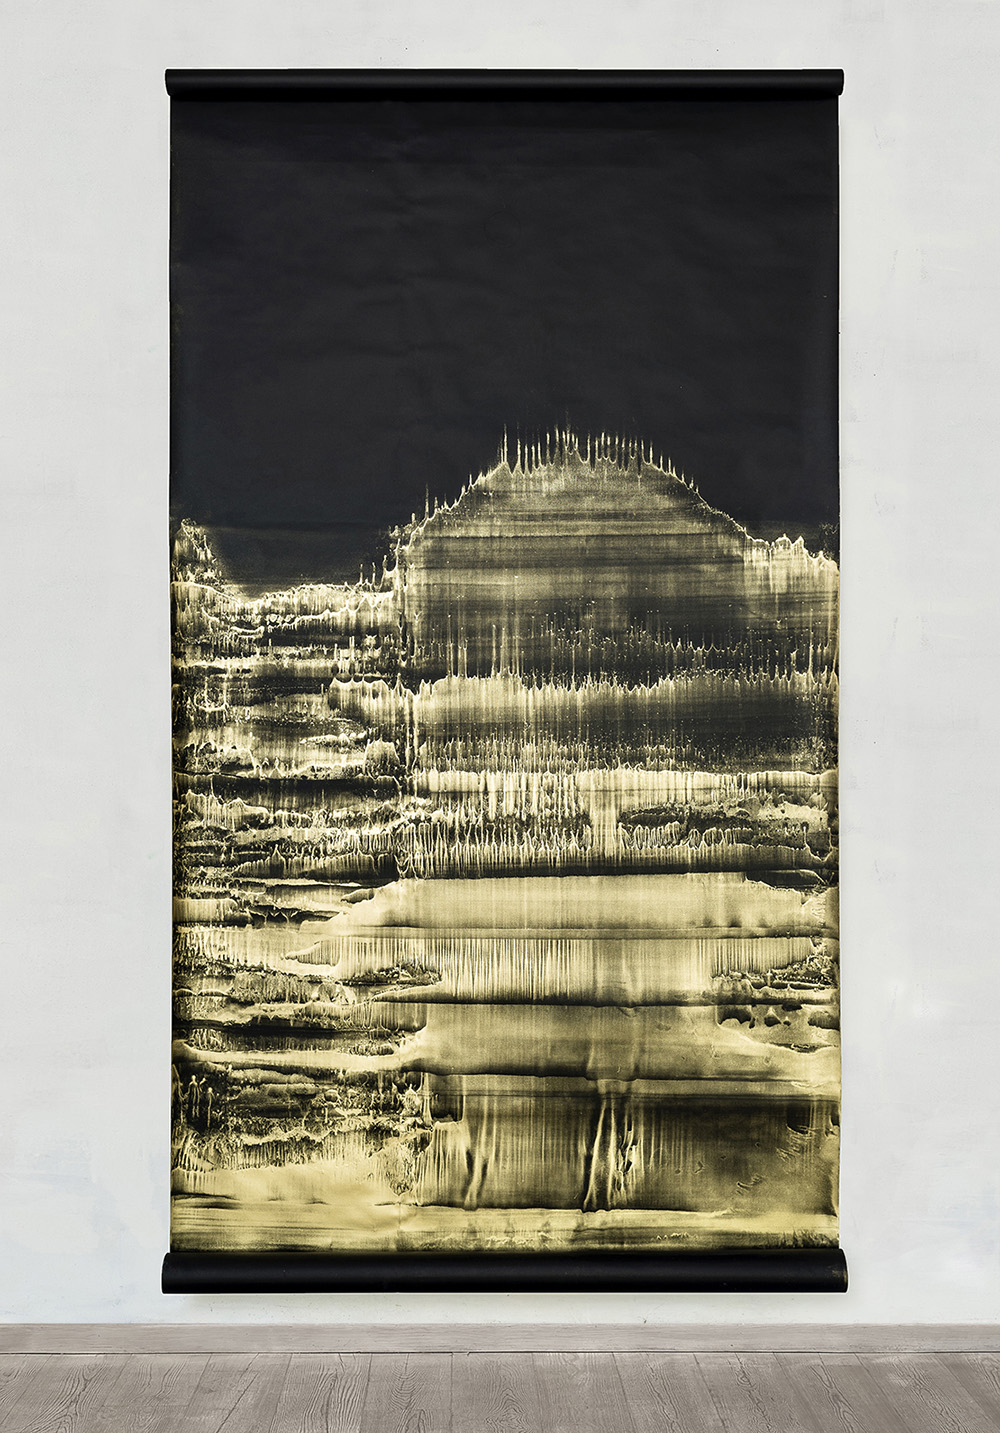 Open Eye - Il Risveglio, 2021, polvere di bronzo emulsionata su carta nera, cm 280x150